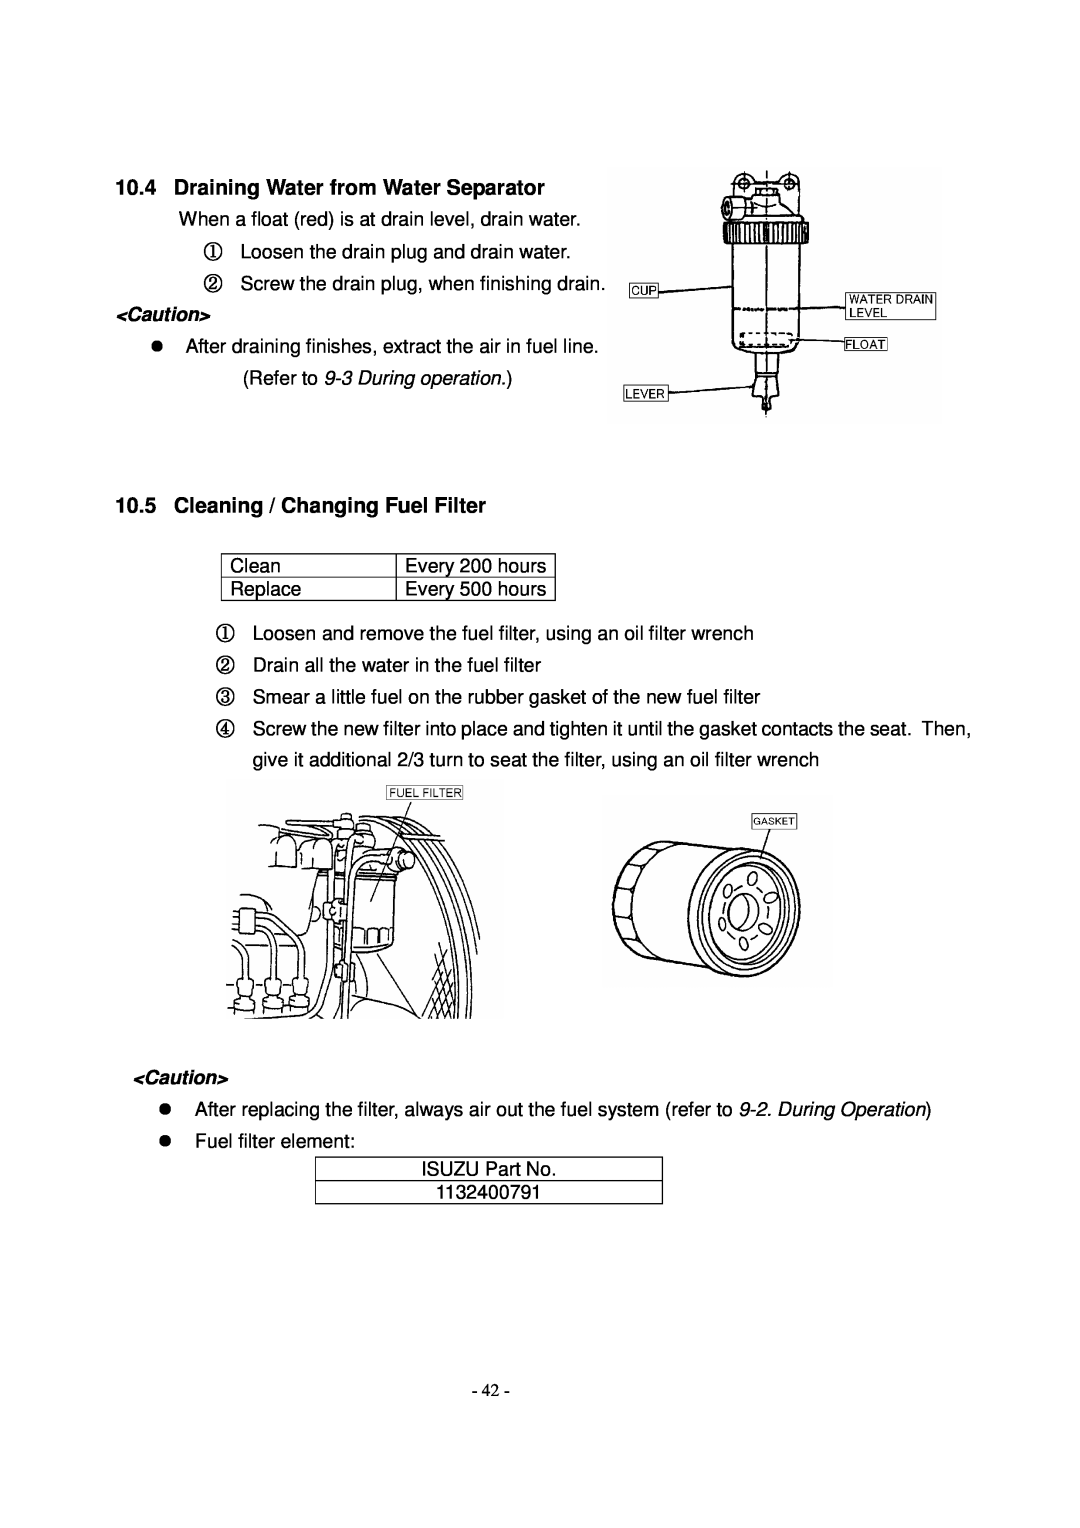 Shindaiwa DG1000MI manual ① ② ③ ④, Draining Water from Water Separator, Cleaning / Changing Fuel Filter 